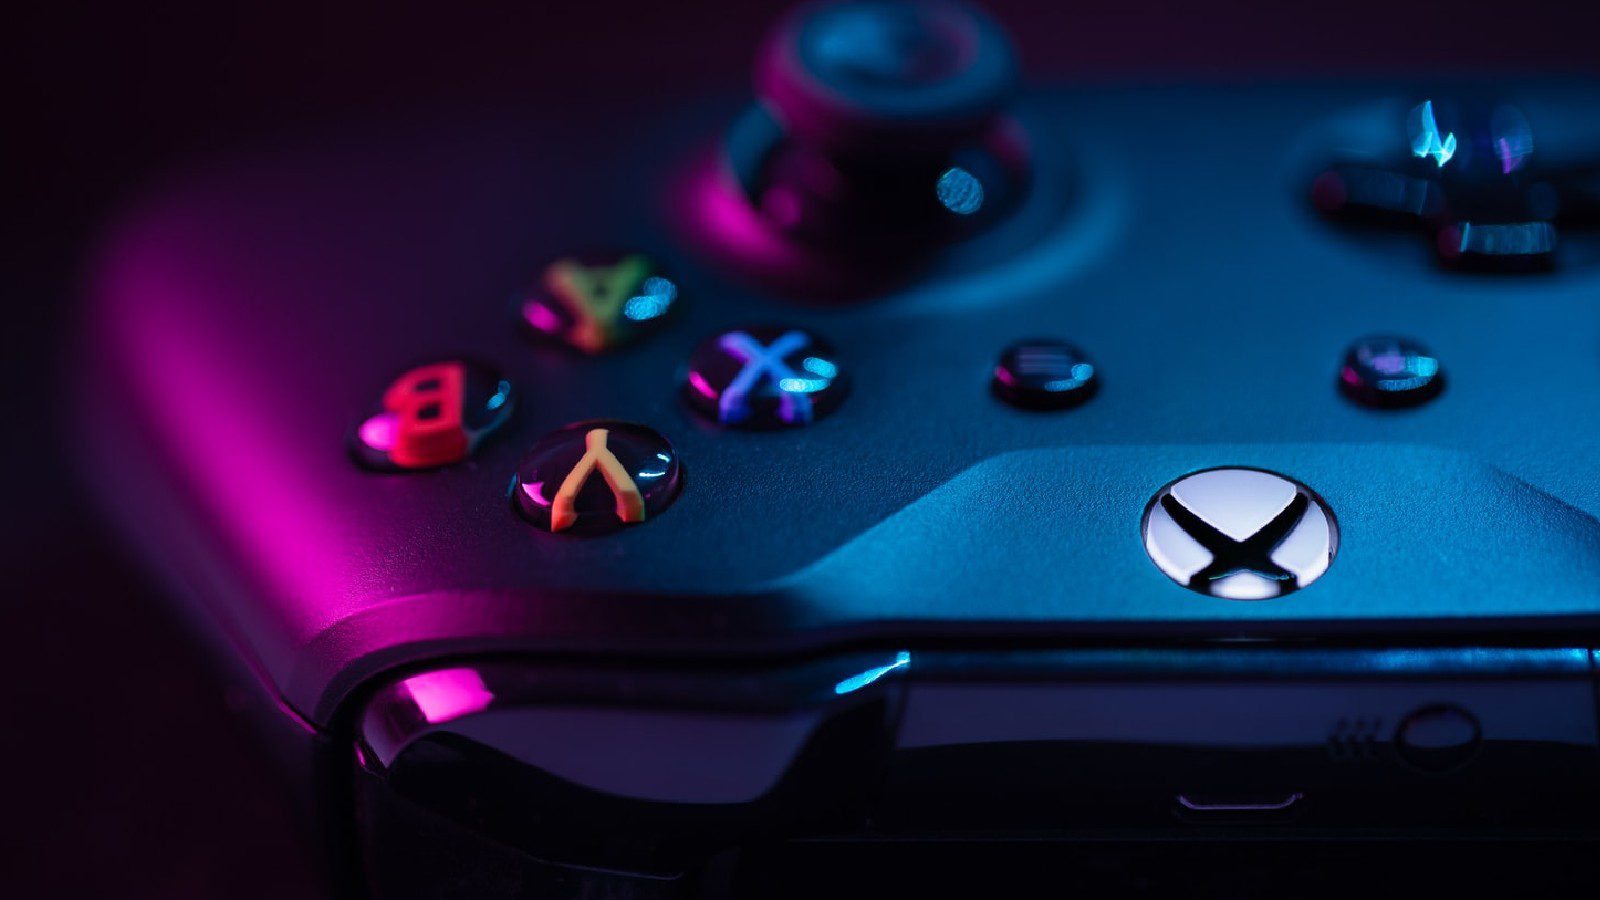 Сетевая функция для игр Halo на Xbox 360 будет отключена 13 января